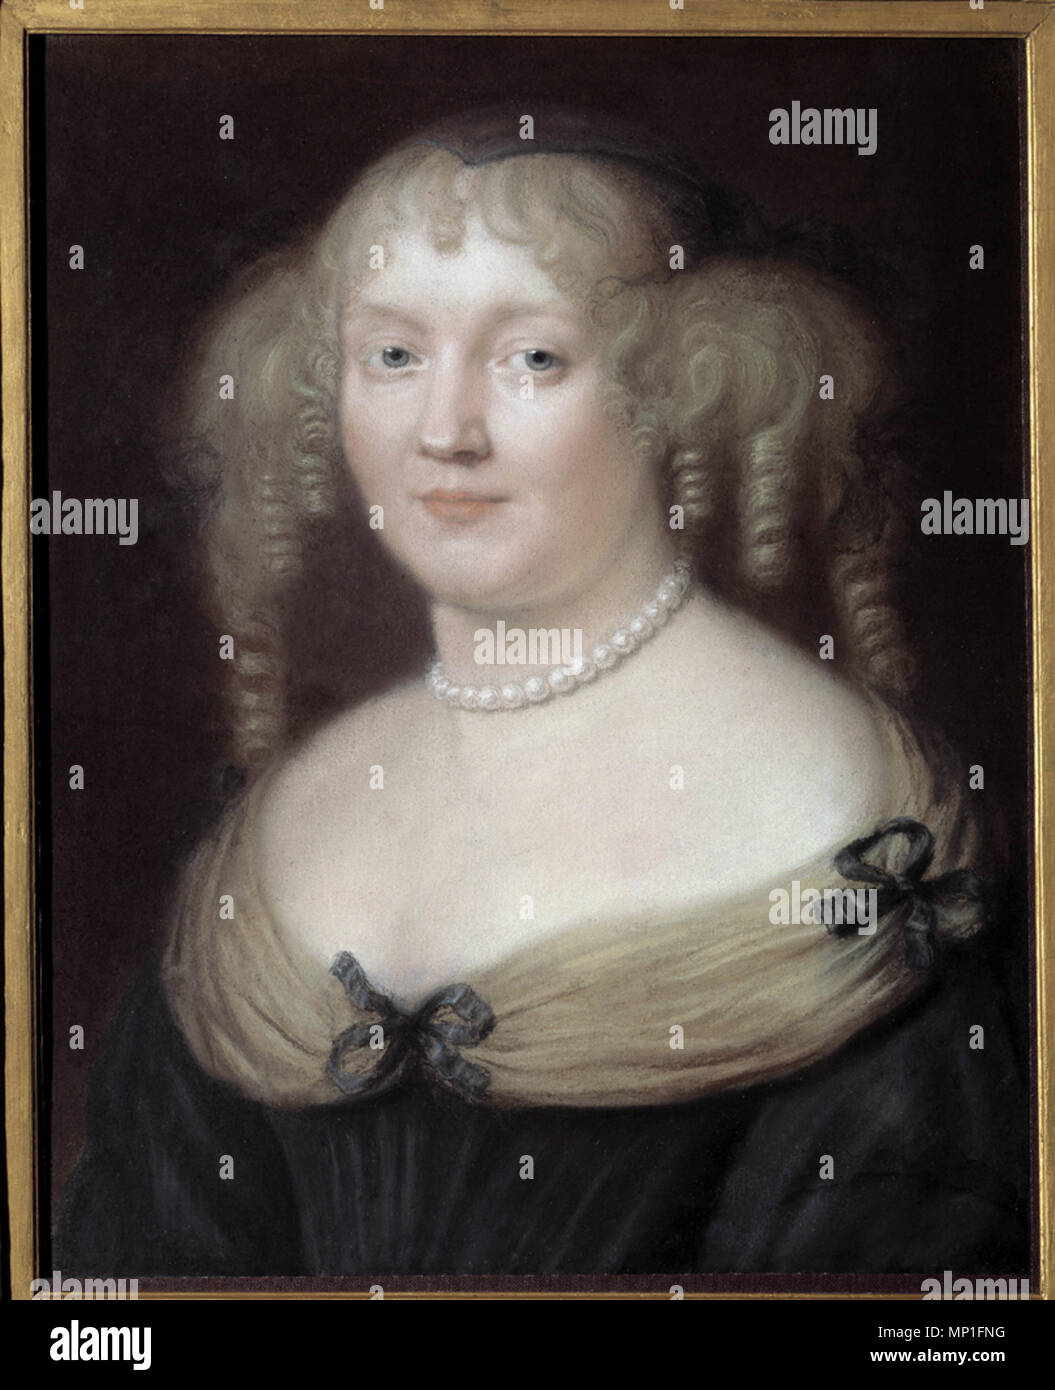 Portrait de Marie de Rabutin-Chantal (Rabutin Chantal), Marquise de Sevigne dite Madame de Sevigne (1626-1696), femme de lettres. Chateau de Bussy Rabutin. Peinture de Nanteuil Robert (1623-1678). Musee Carnavalet. bra02603 917 Nanteuil - Portrait of Marie de Rabutin-Chantal Stock Photo